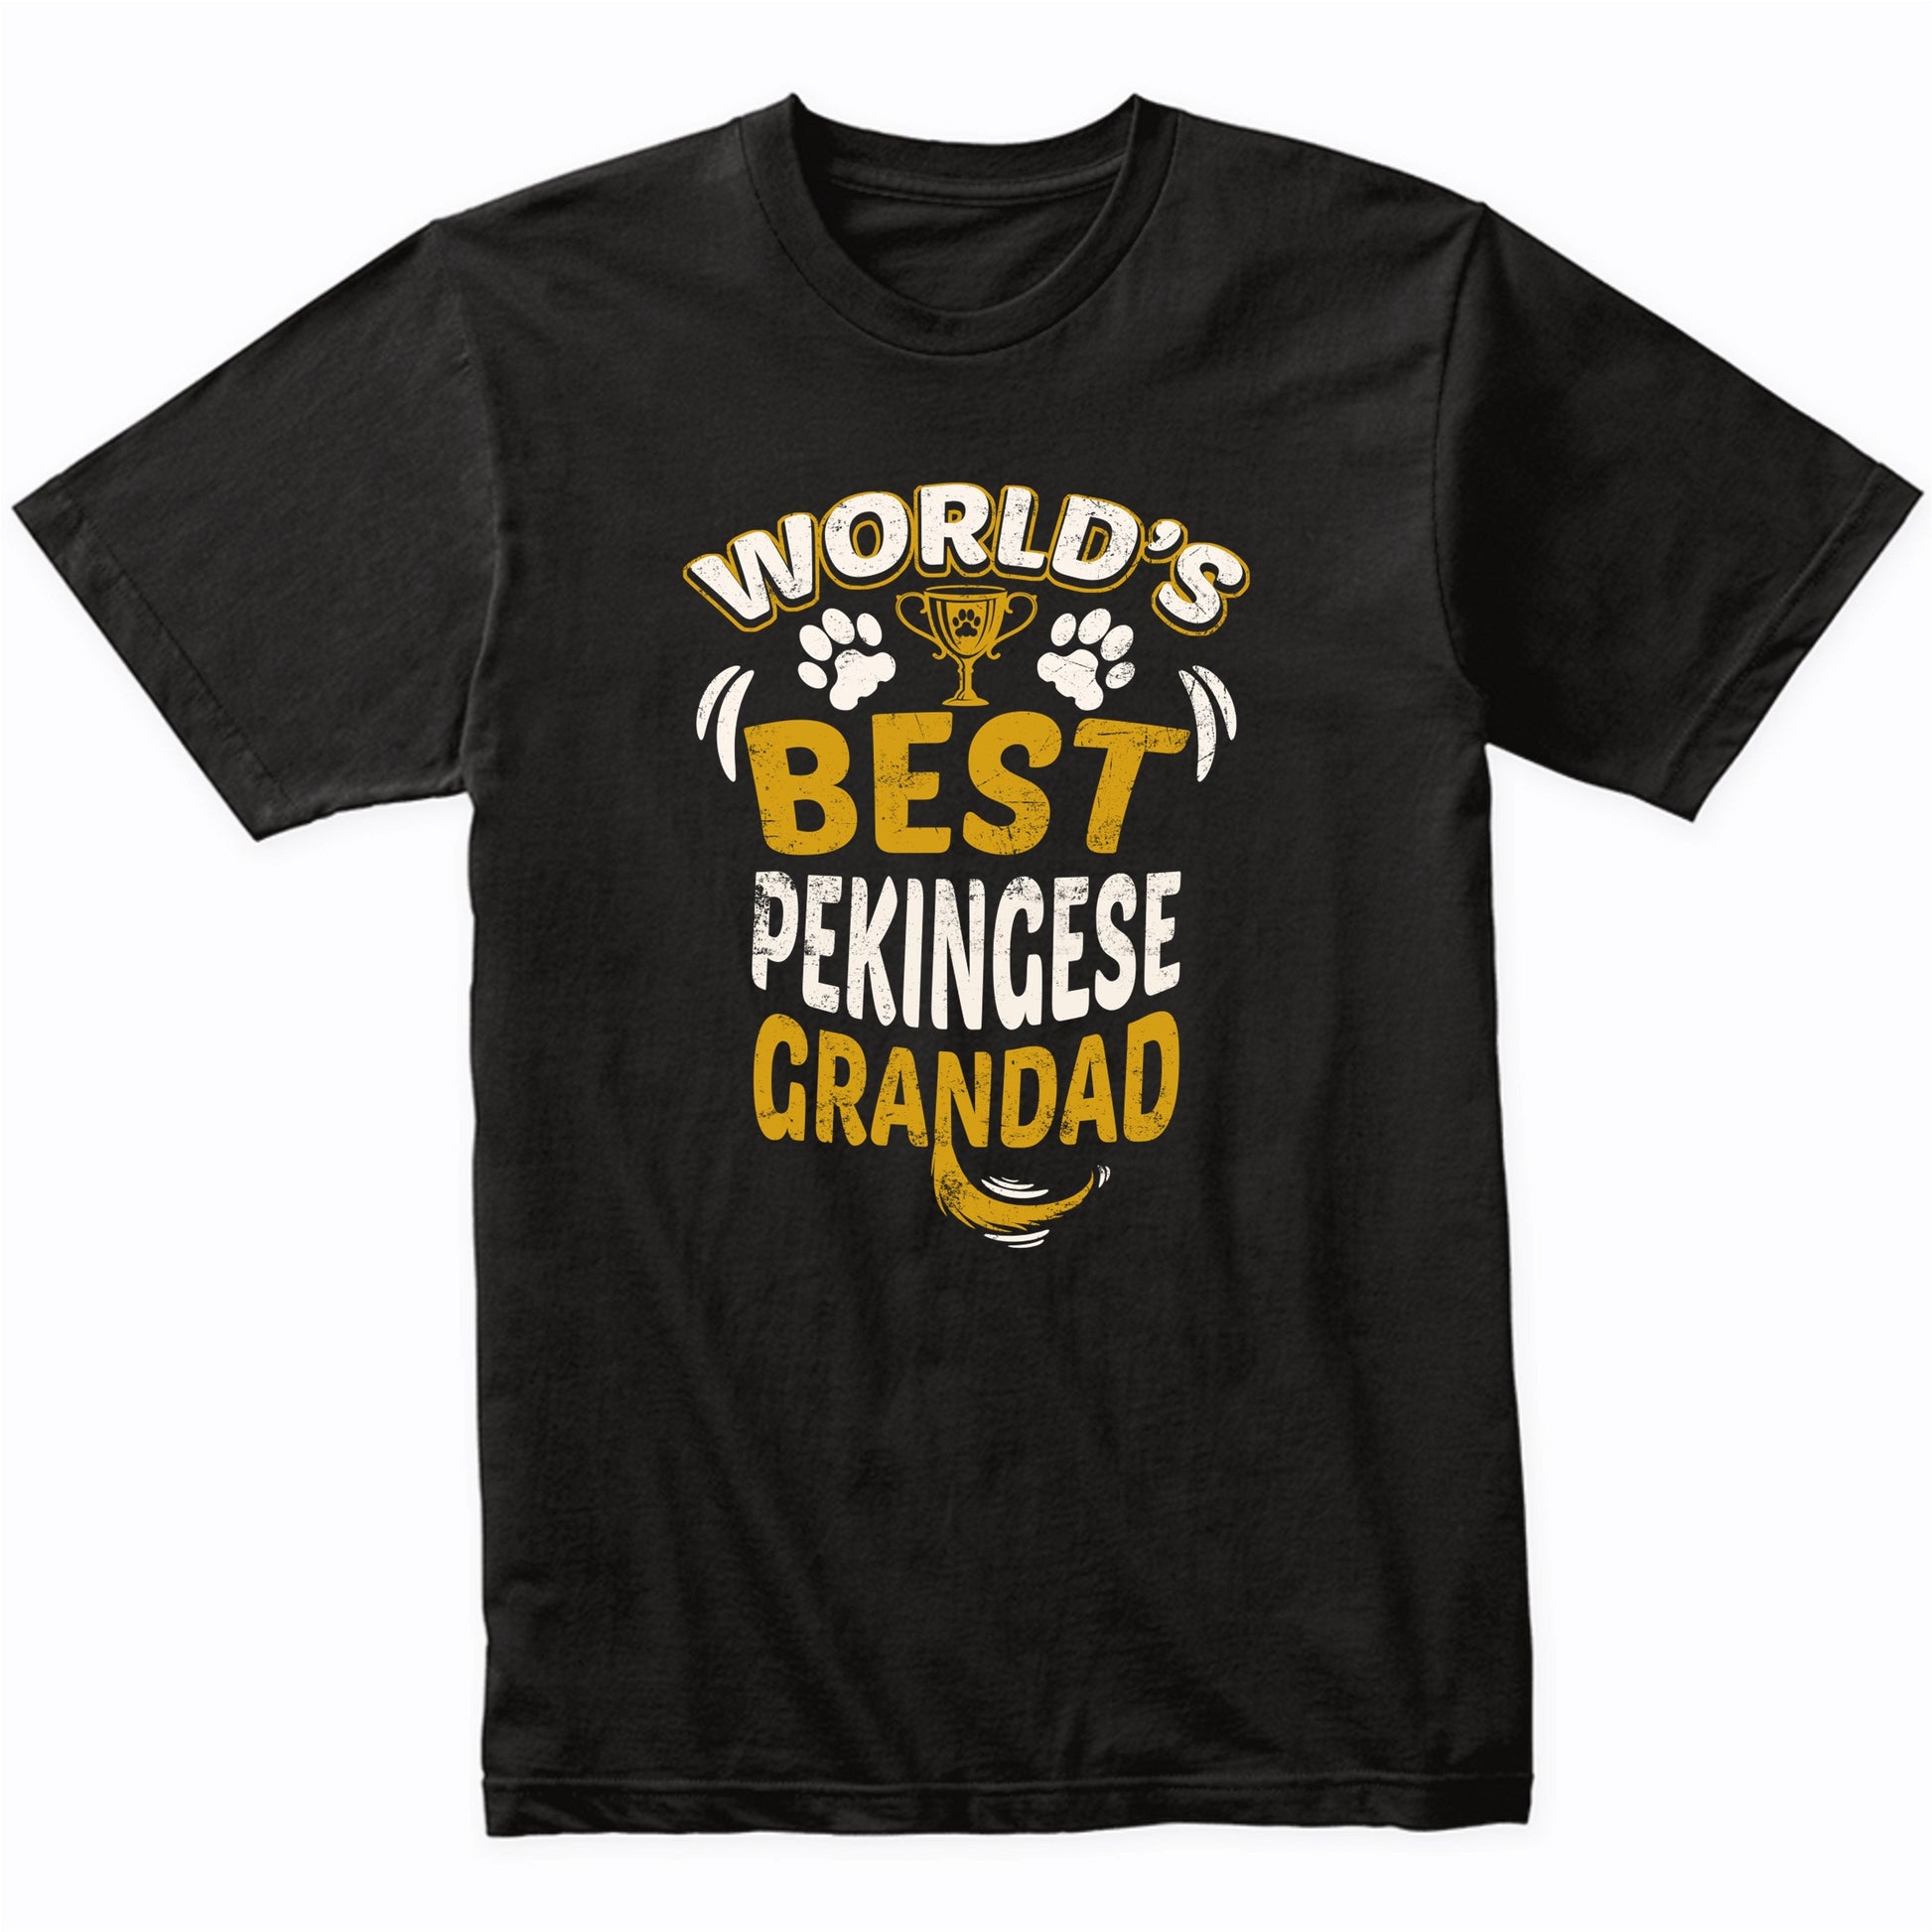 World's Best Pekingese Grandad Graphic T-Shirt